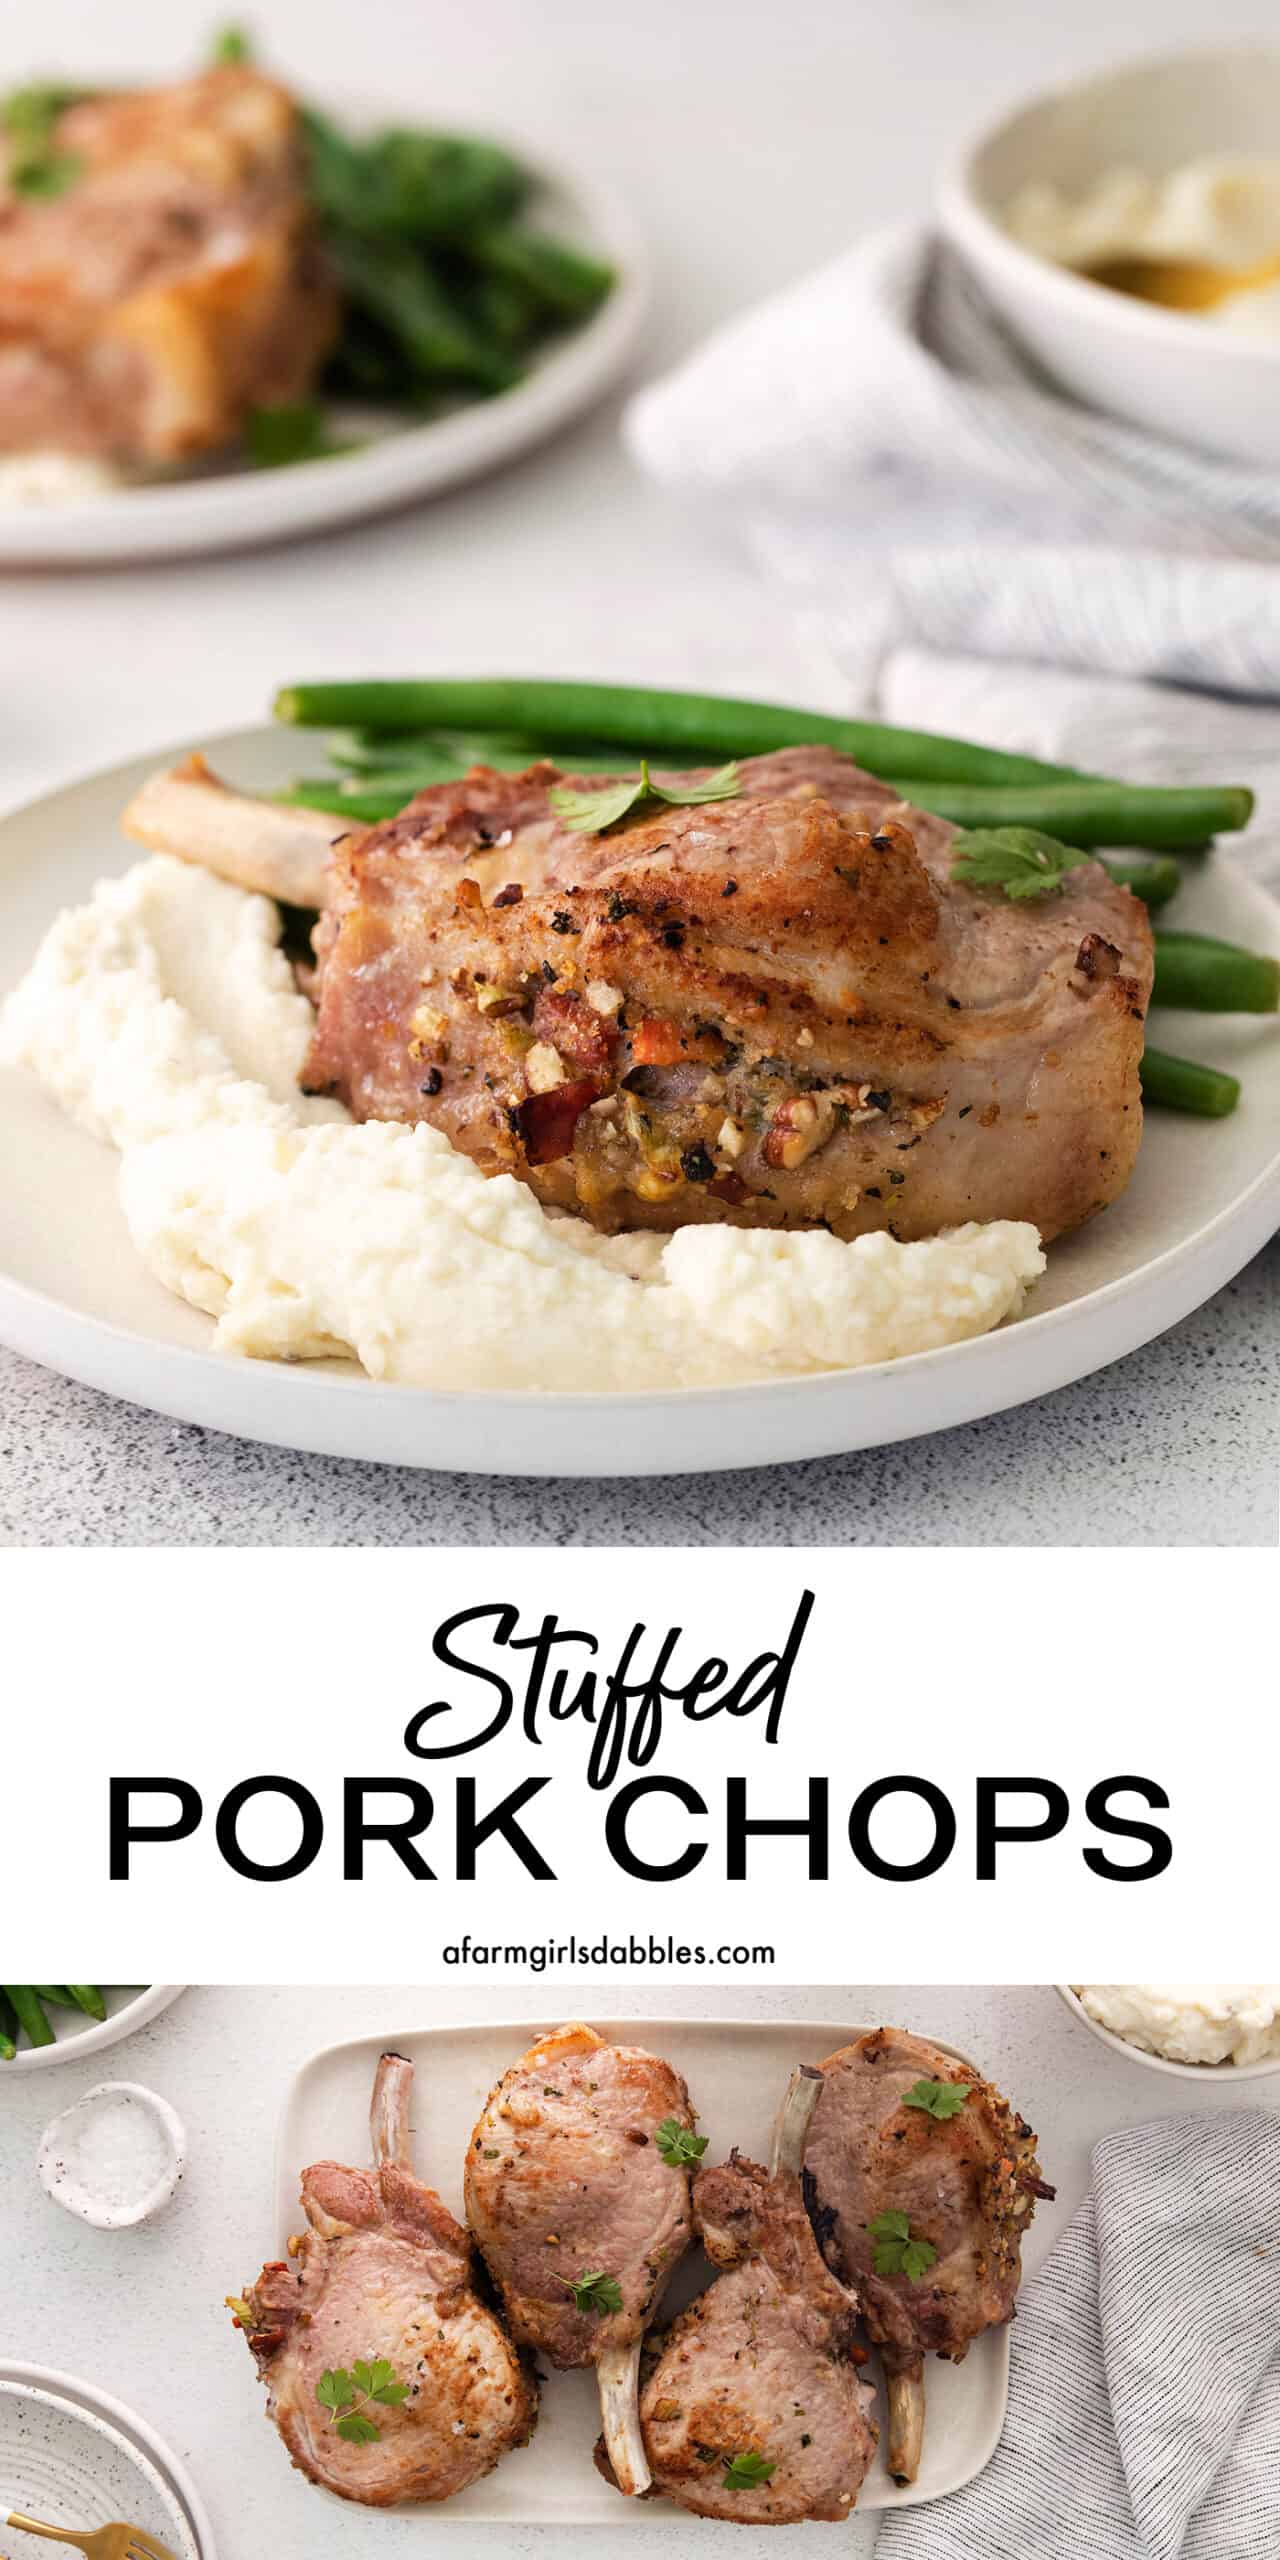 Pinterest image for stuffed pork chops